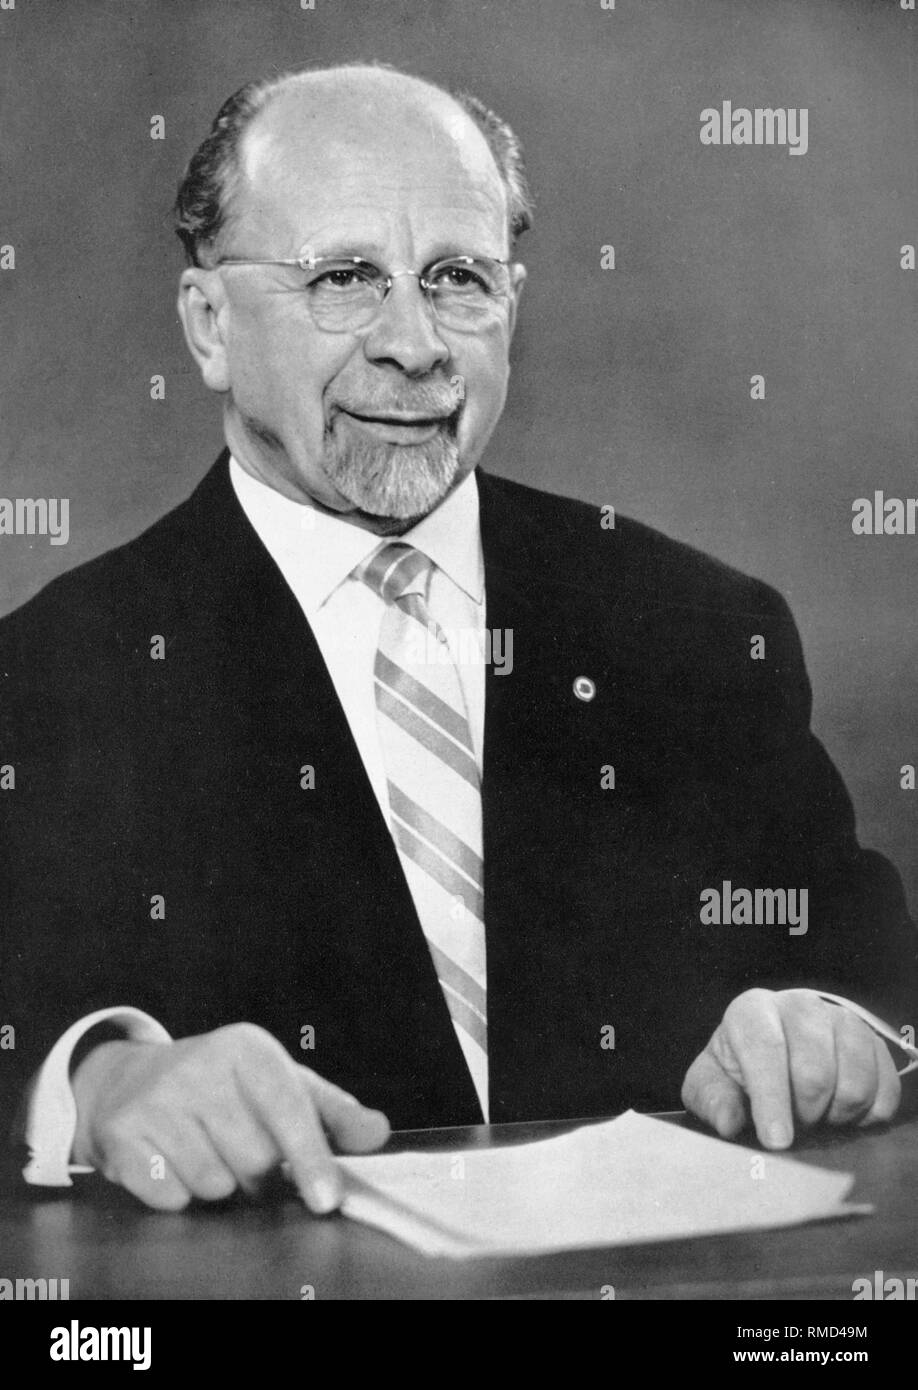 Walter Ulbricht (30.06.1893 - 01.08.1973) Vorsitzender des Staatsrates der DDR. Ulbricht bittet die Bürger der DDR in einer im Fernsehen übertragenen Rede am 4. April 1968, für die neue Verfassung der DDR bei der Volksabstimmung am 6. April 1968 zu stimmen. Stockfoto